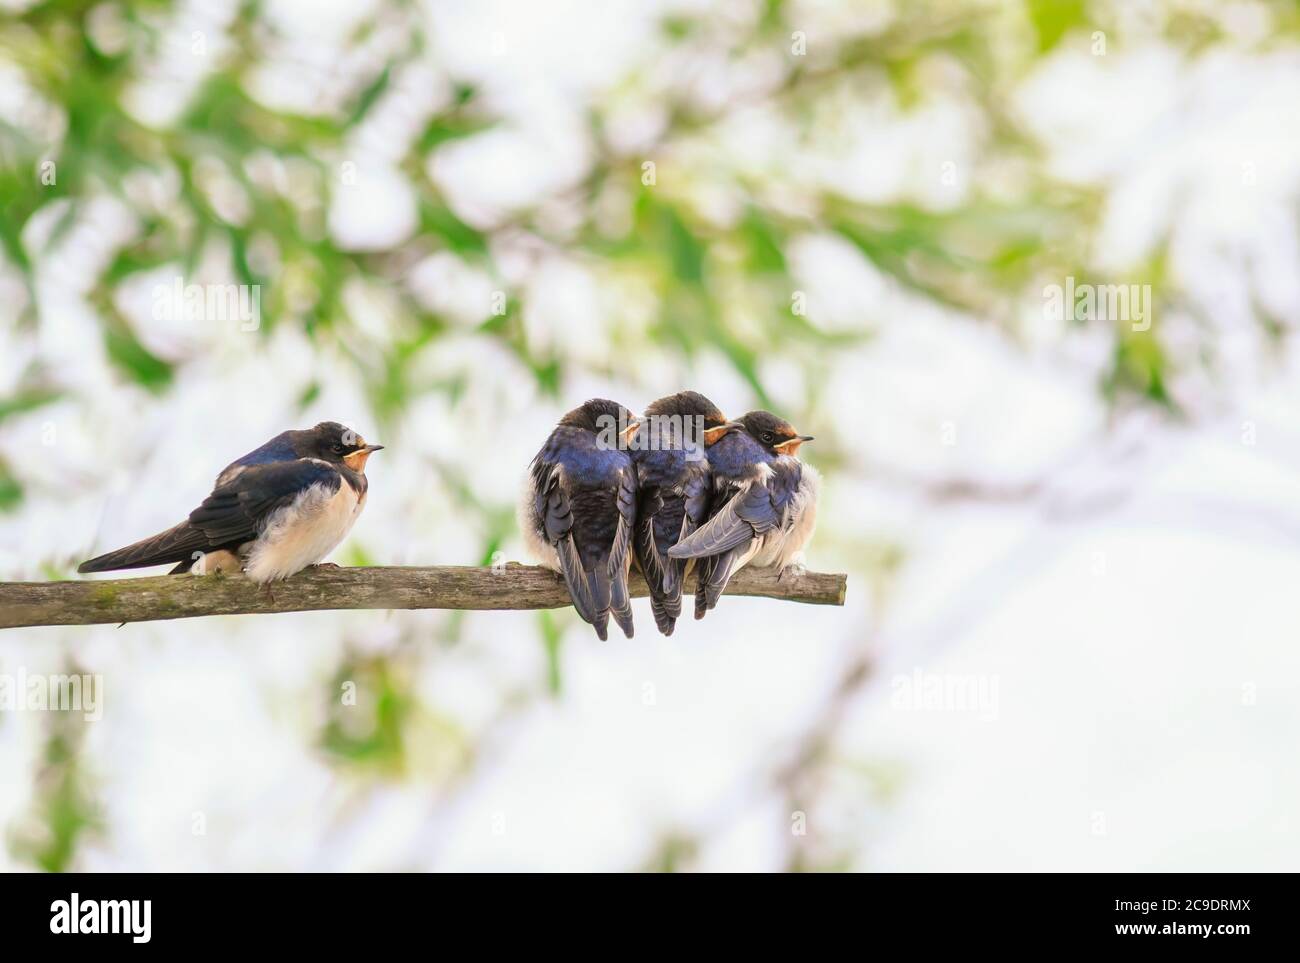 Arrière-plan naturel avec de petits poussins d'oiseaux, des hirondelles de village s'assoient sur les branches d'un arbre lors d'une Sunny journée d'été Banque D'Images